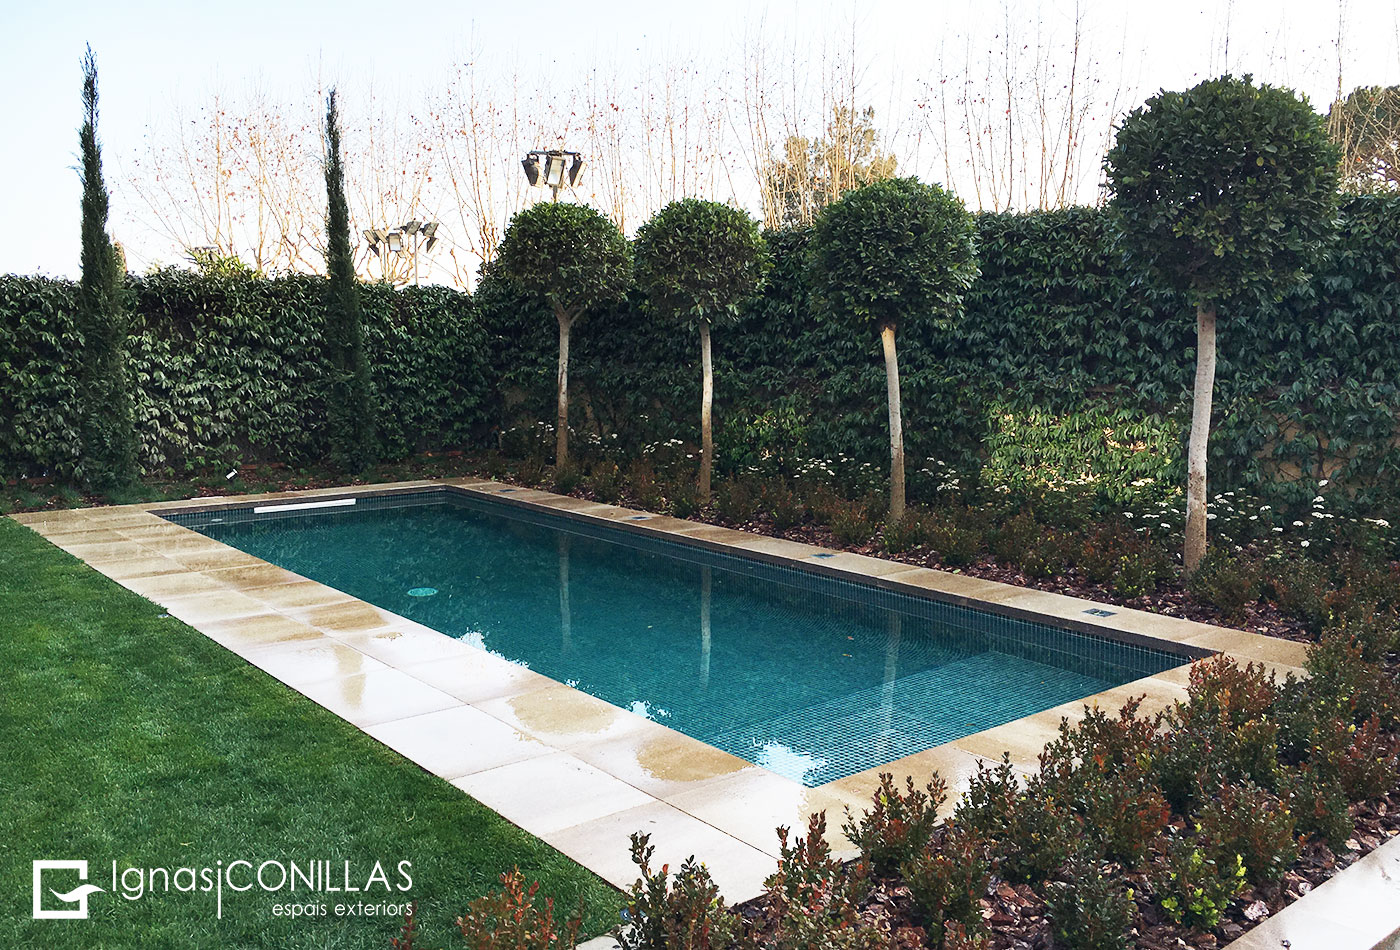 CONILLAS Jardin con piscina900x450a